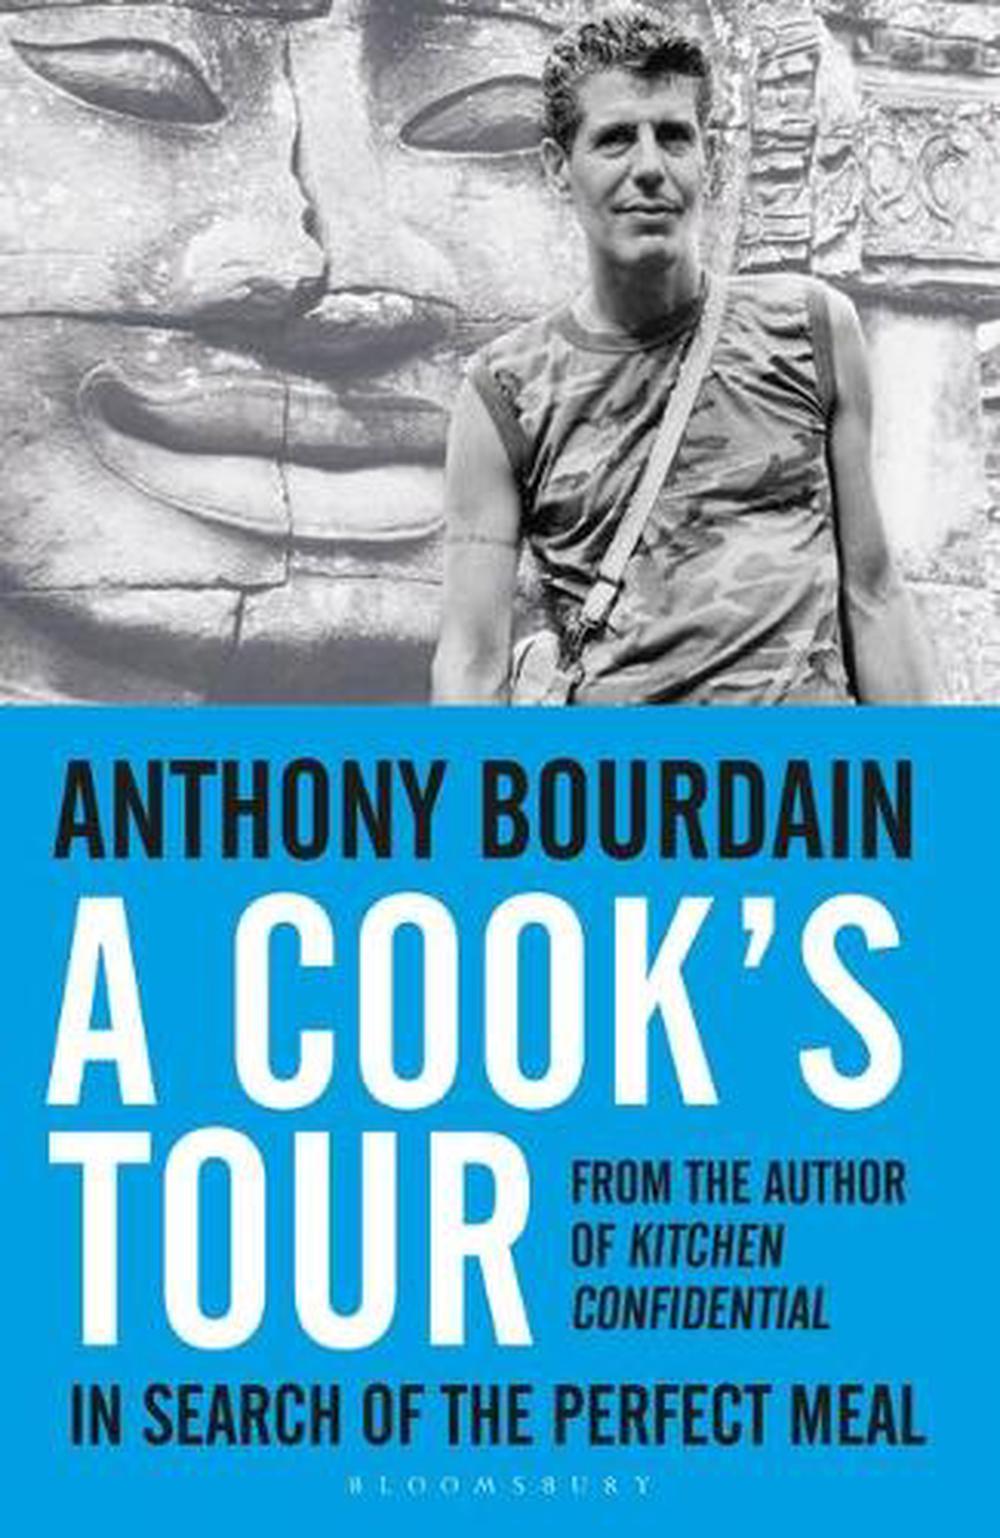 cook's tour define